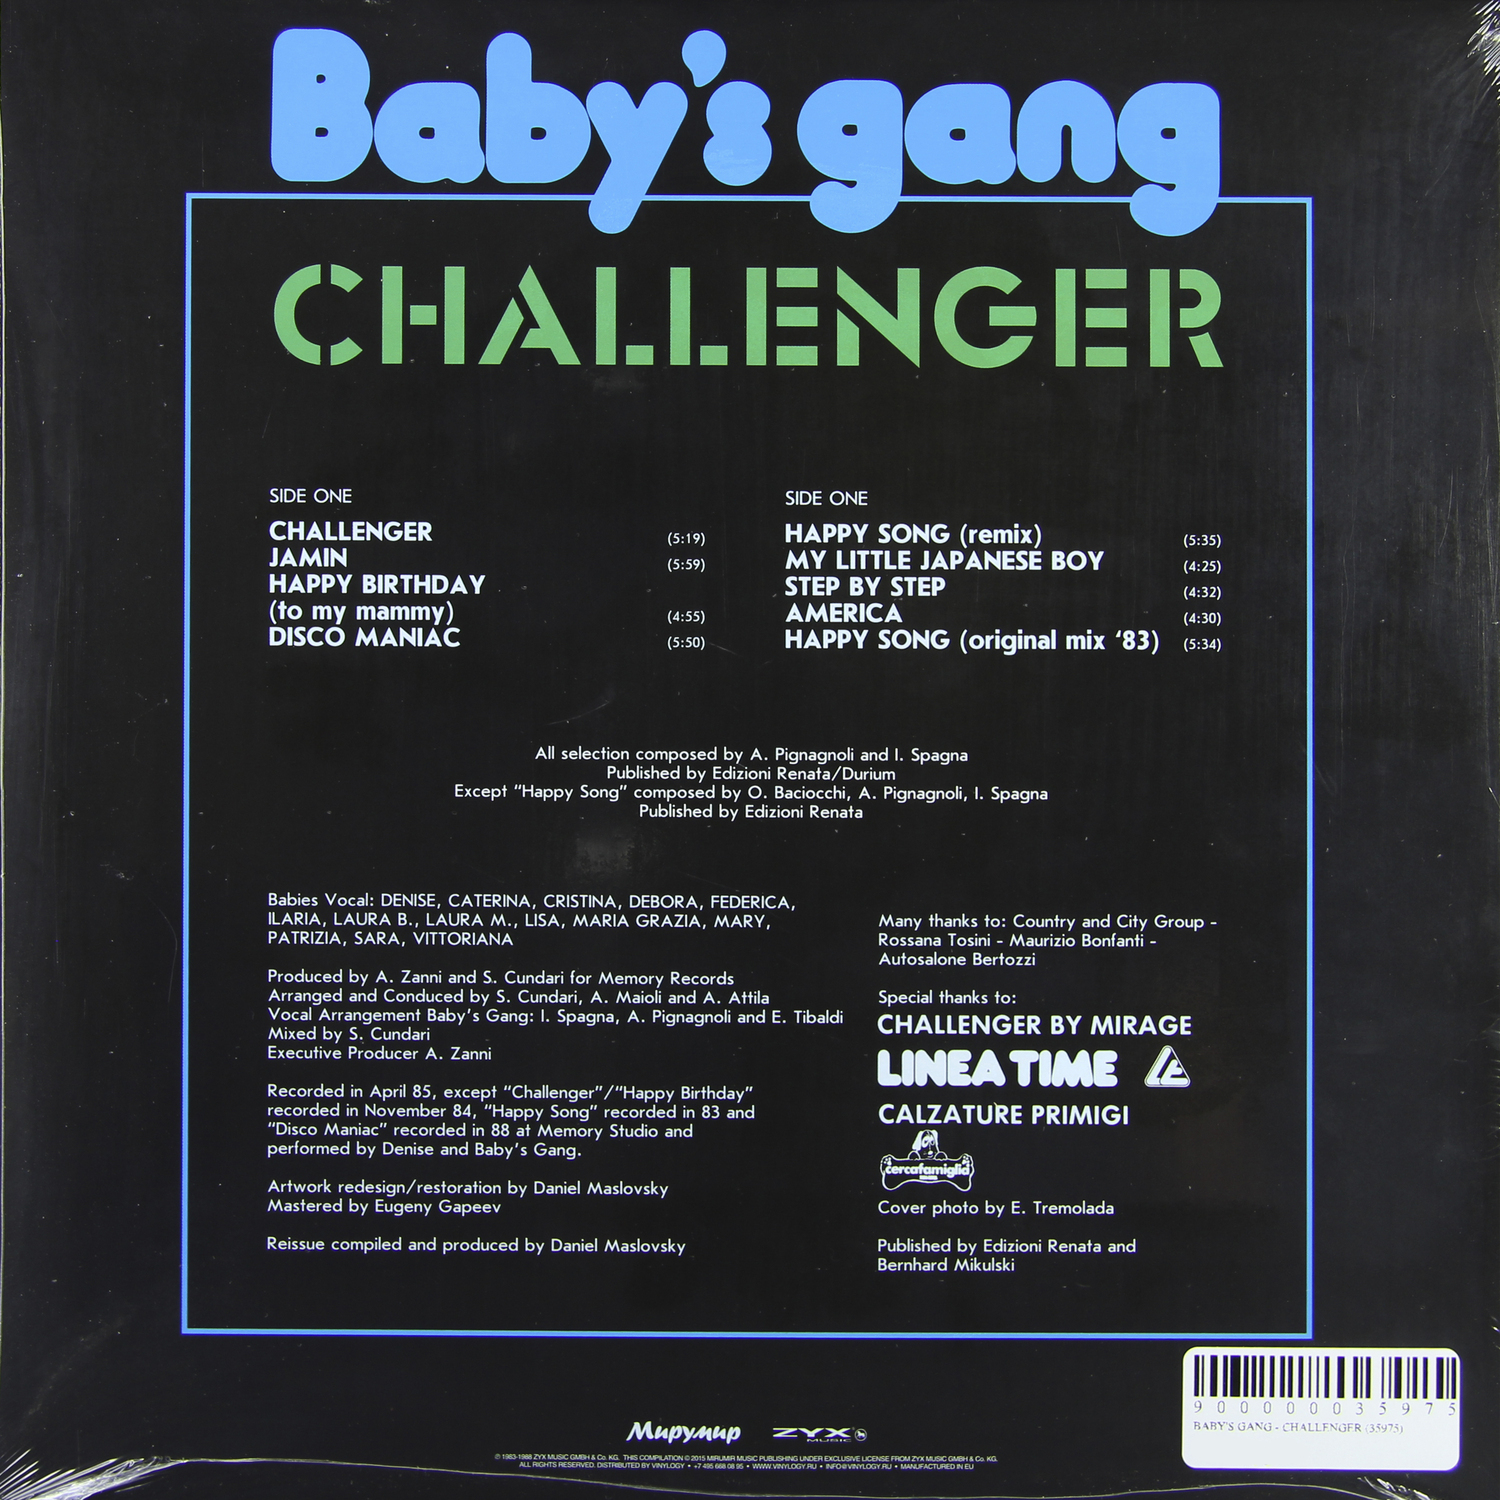 Gang challenger. Baby s gang пластинка. Baby's gang Challenger фотоальбом. Группа Challenger 1985 Baby gang. Babys gang Challenger винил.